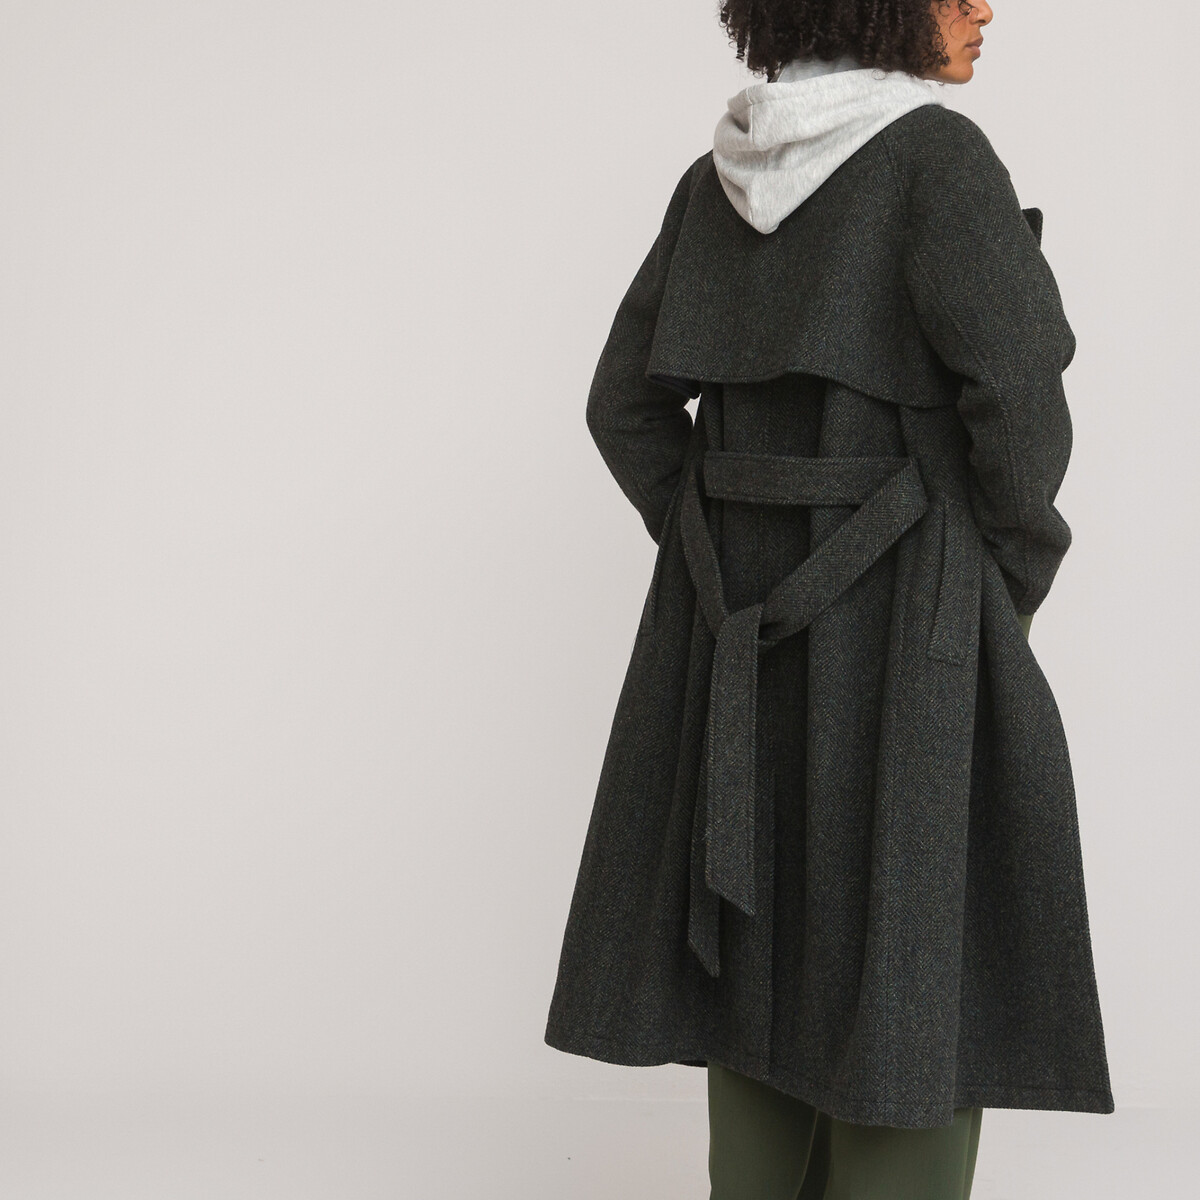 Пальто длинное из шерстяного драпа в ломаную саржу  36 (FR) - 42 (RUS) зеленый LaRedoute, размер 36 (FR) - 42 (RUS) Пальто длинное из шерстяного драпа в ломаную саржу  36 (FR) - 42 (RUS) зеленый - фото 4